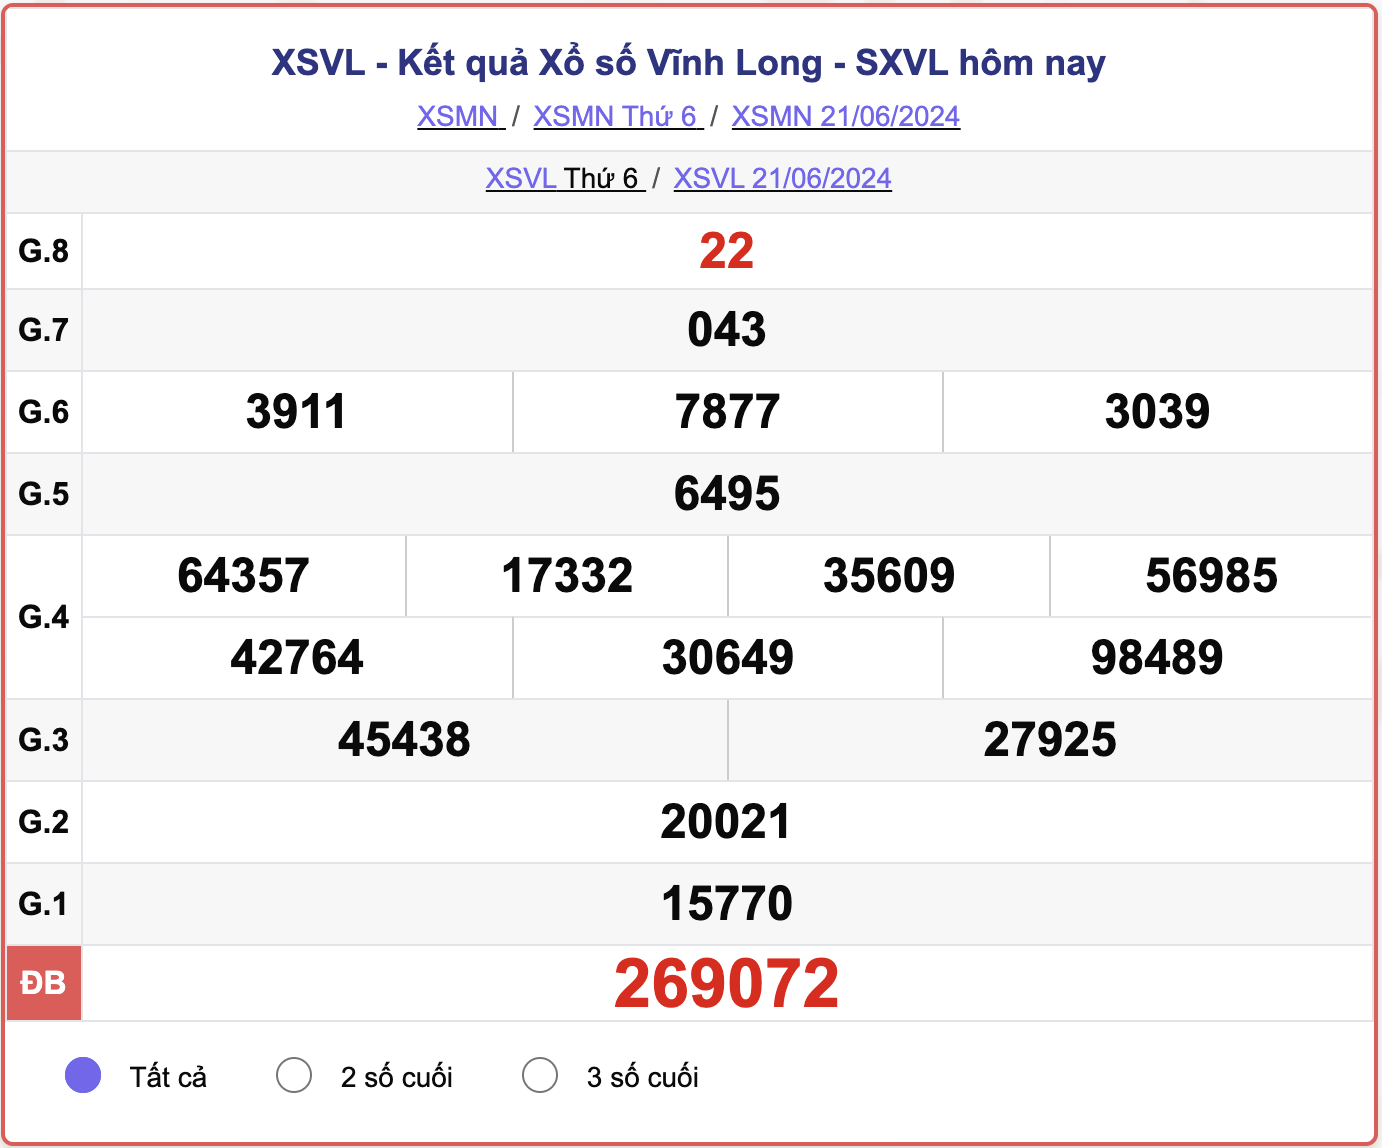 XSVL 21/6, kết quả xổ số Vĩnh Long hôm nay 21/6/2024.